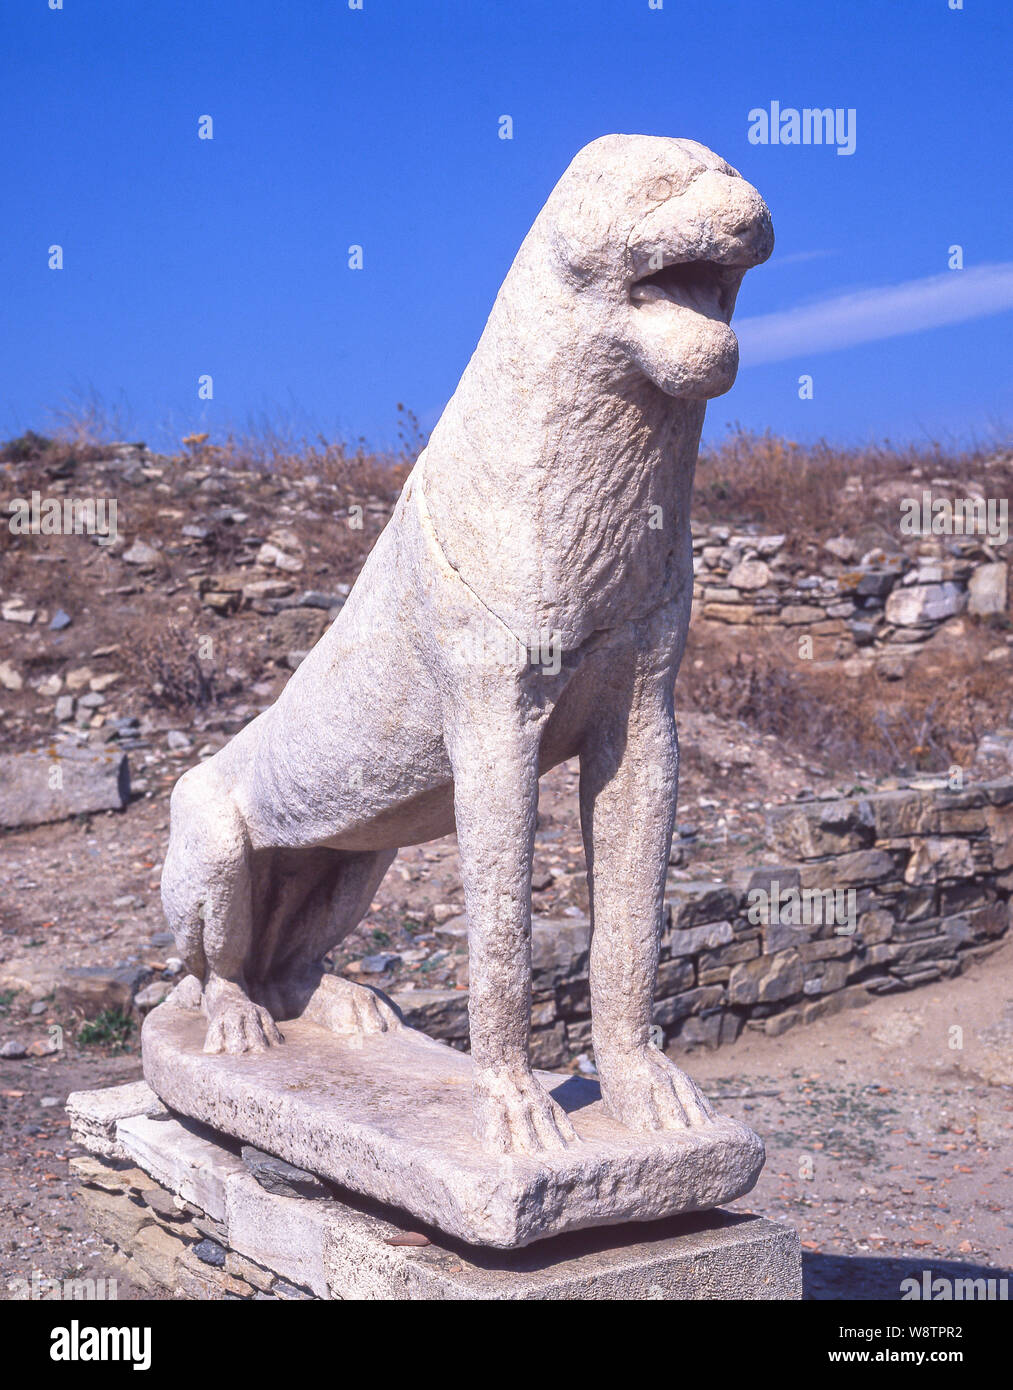 La Terrasse des Lions, site archéologique de Délos, Delos, Cyclades, Mer Égée, Grèce Région Sud Banque D'Images